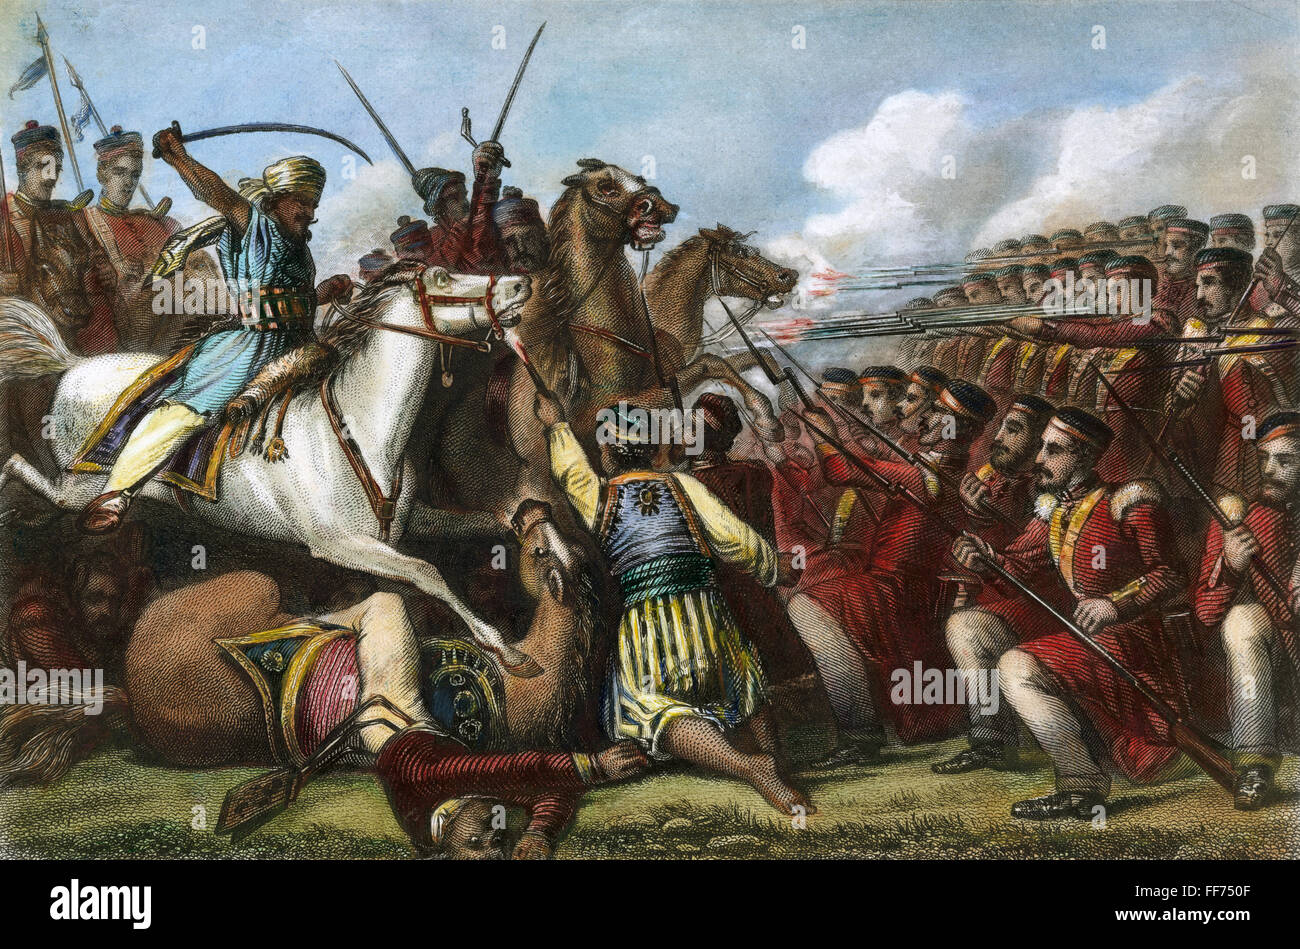 INDIA: el motín de SEPOY, 1857. /NSepoy amotinados caballería atacar una plaza de infantería británica en la batalla de Cawnpore en 1857. Grabado pintado inglés contemporáneo. Foto de stock